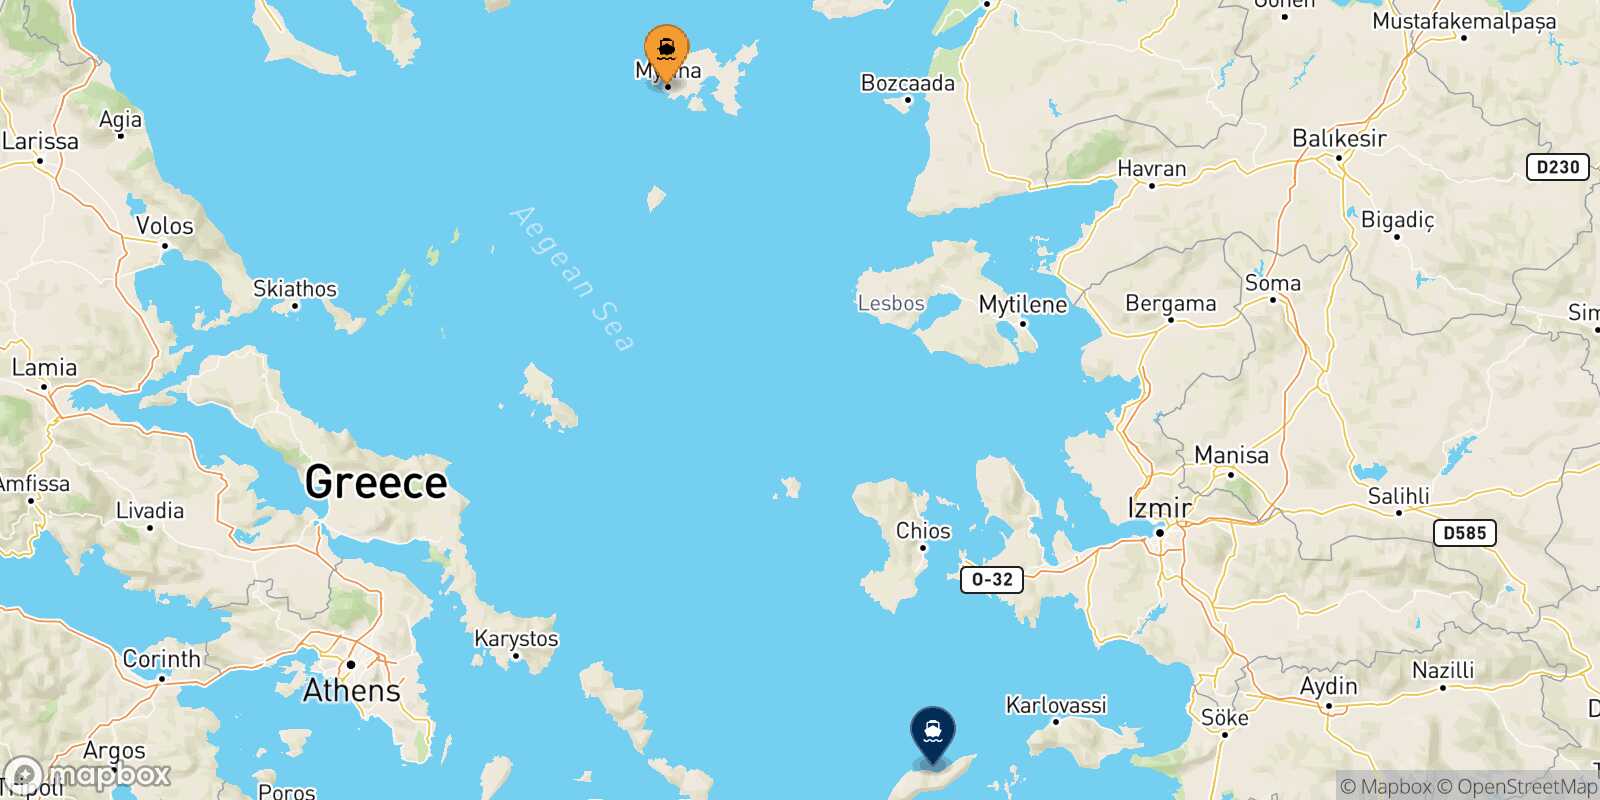 Mapa de la ruta Mirina (Limnos) Agios Kirikos (Ikaria)